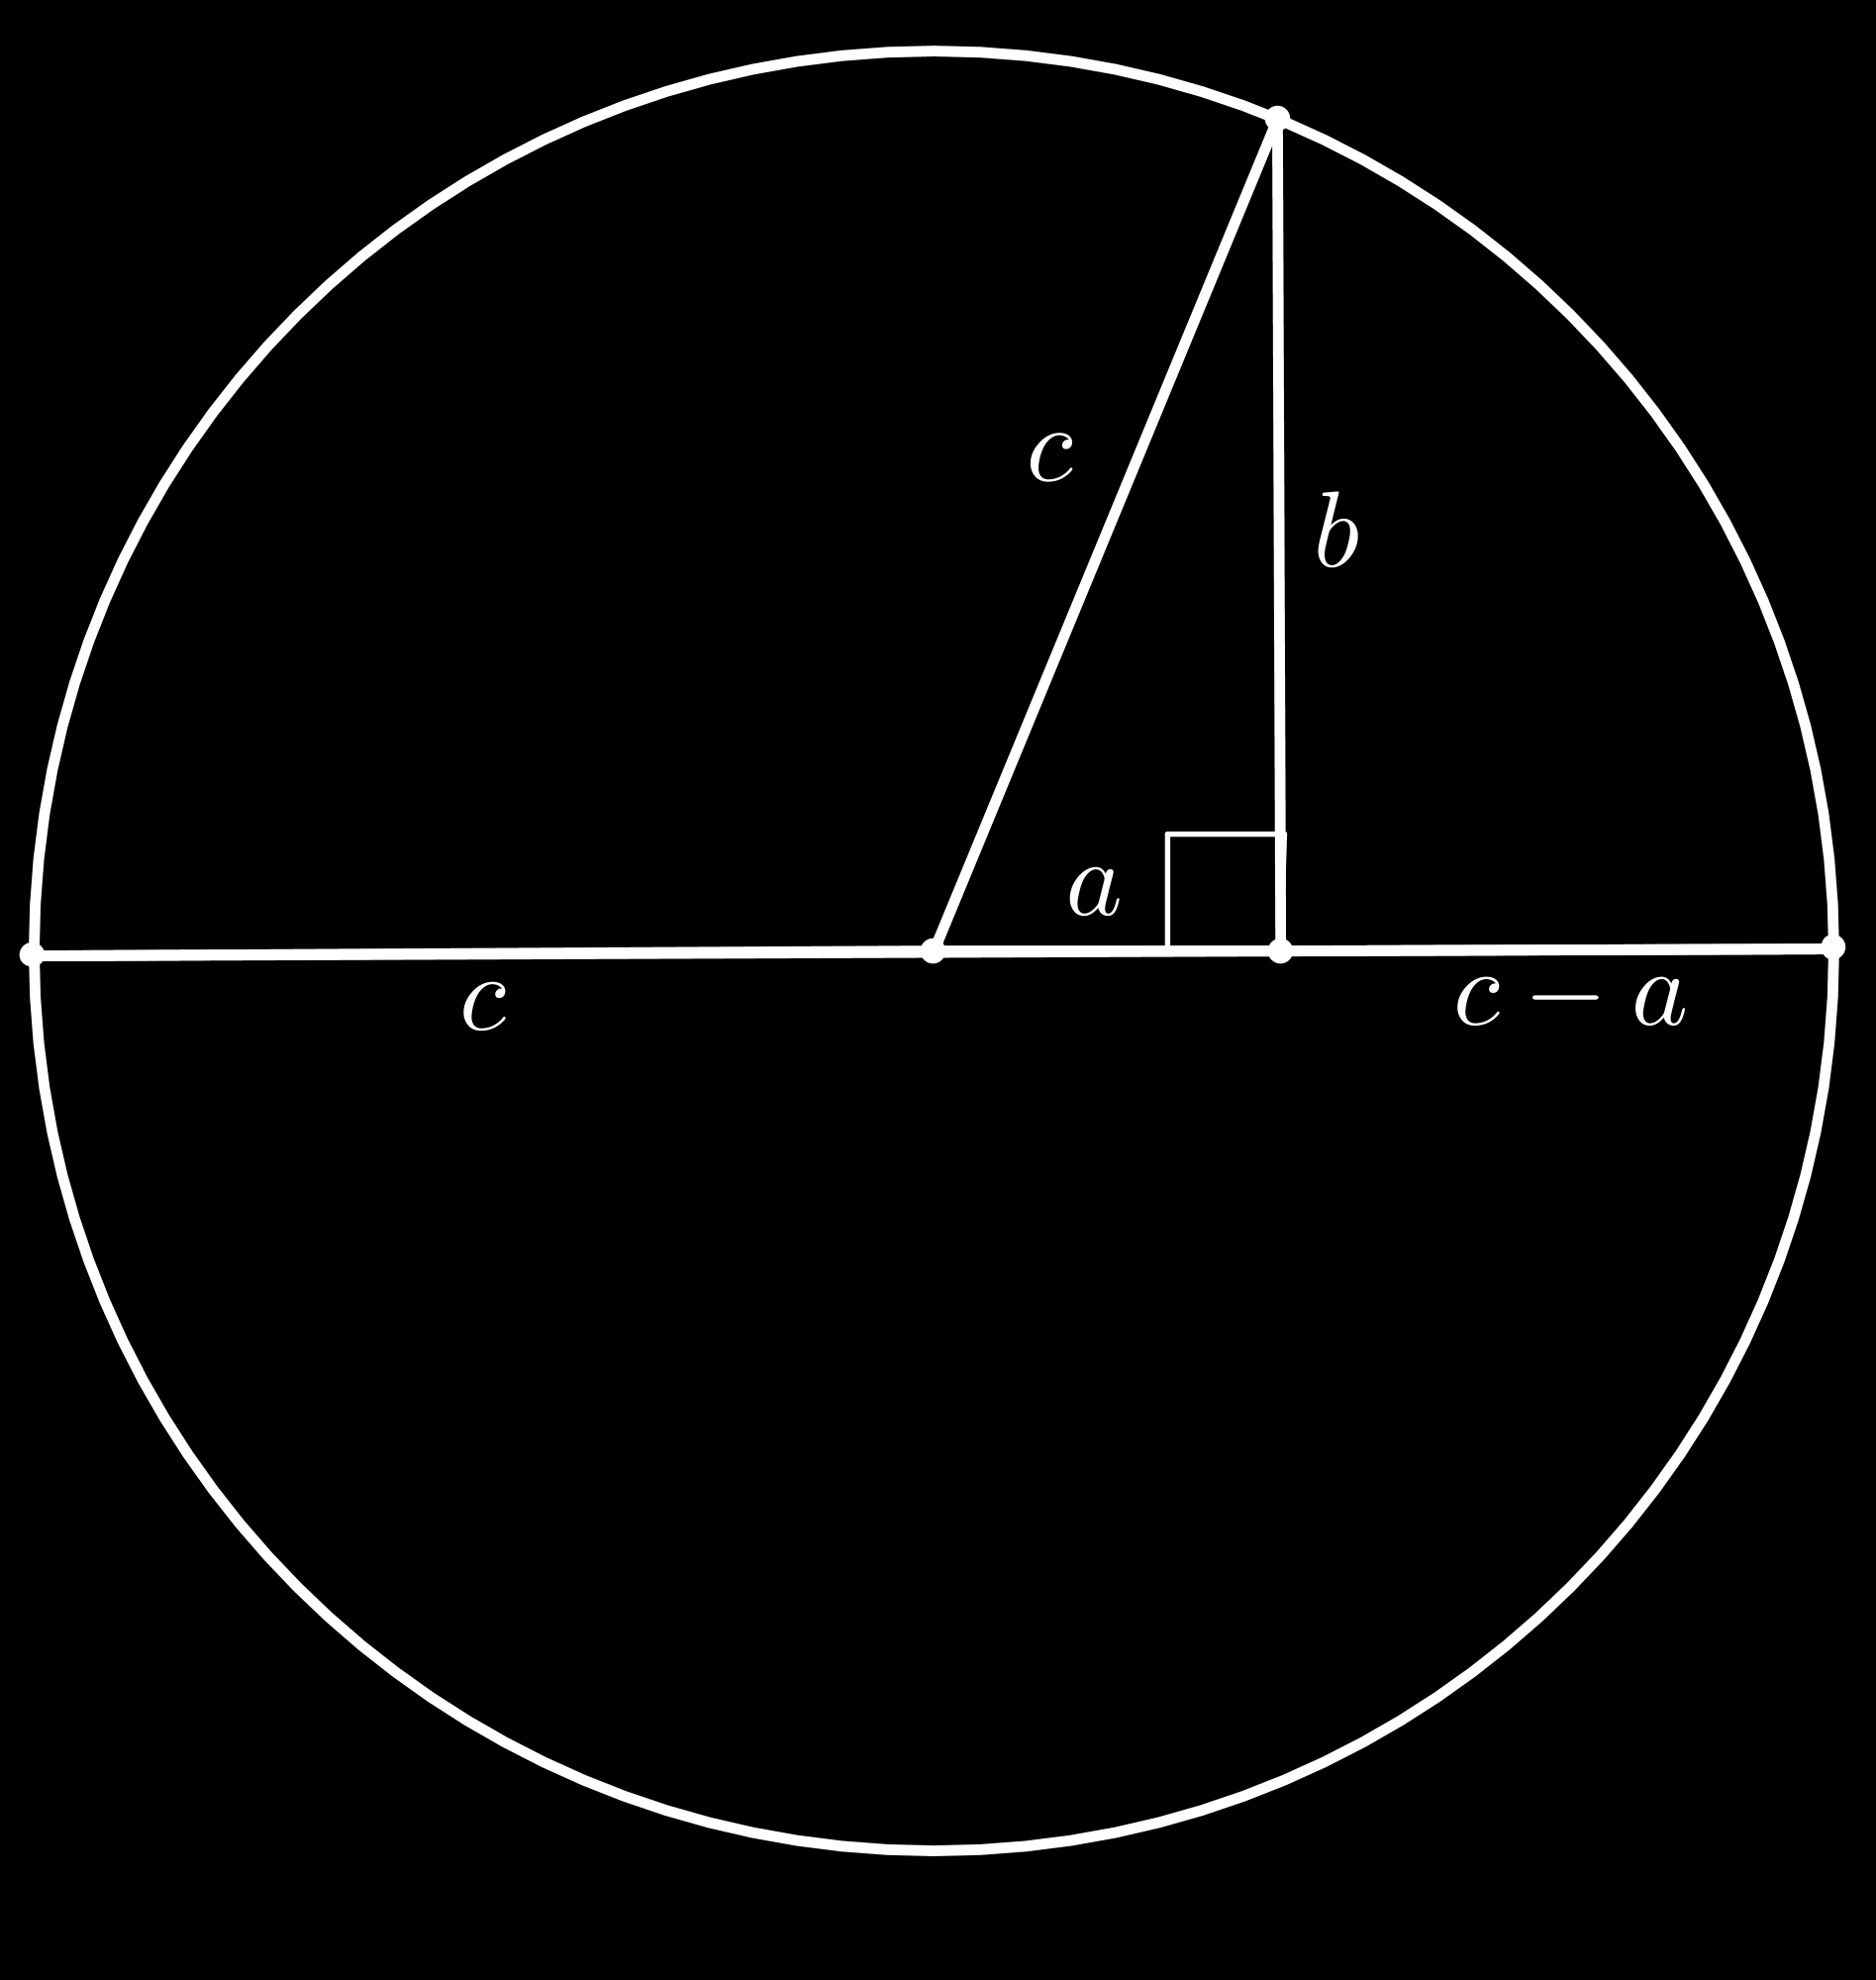 Satz des Pythagoras II Der Satz des Pythagoras besagt: Errichtet man auf den drei Kanten eines rechtwinkligen Dreiecks jeweils ein Quadrat, so sind die beiden kleineren Quadrate